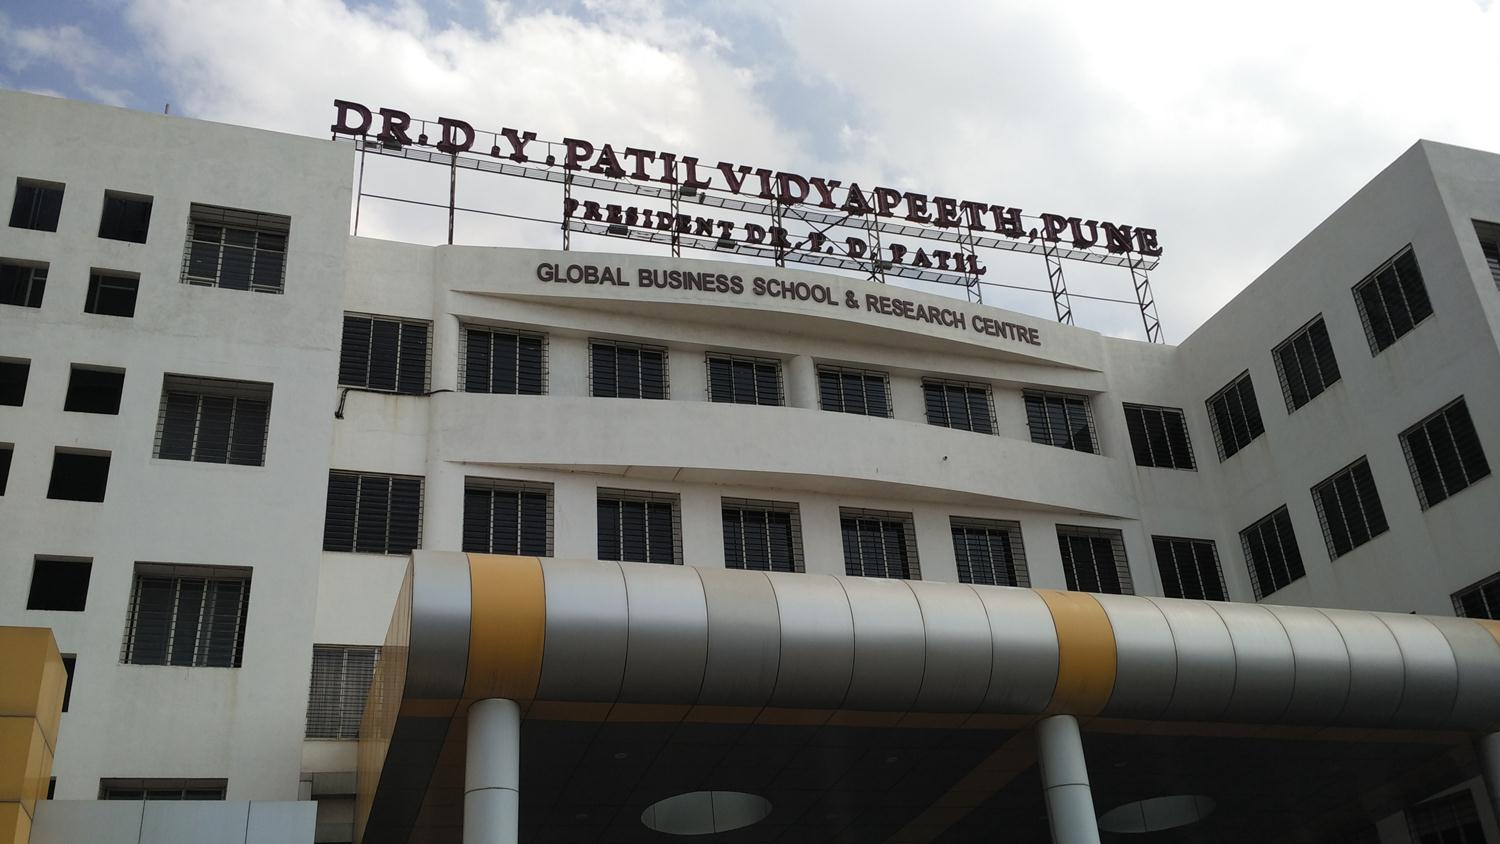 Dr D Y PATIL VIDYAPEETHS Global Business School Research Centre